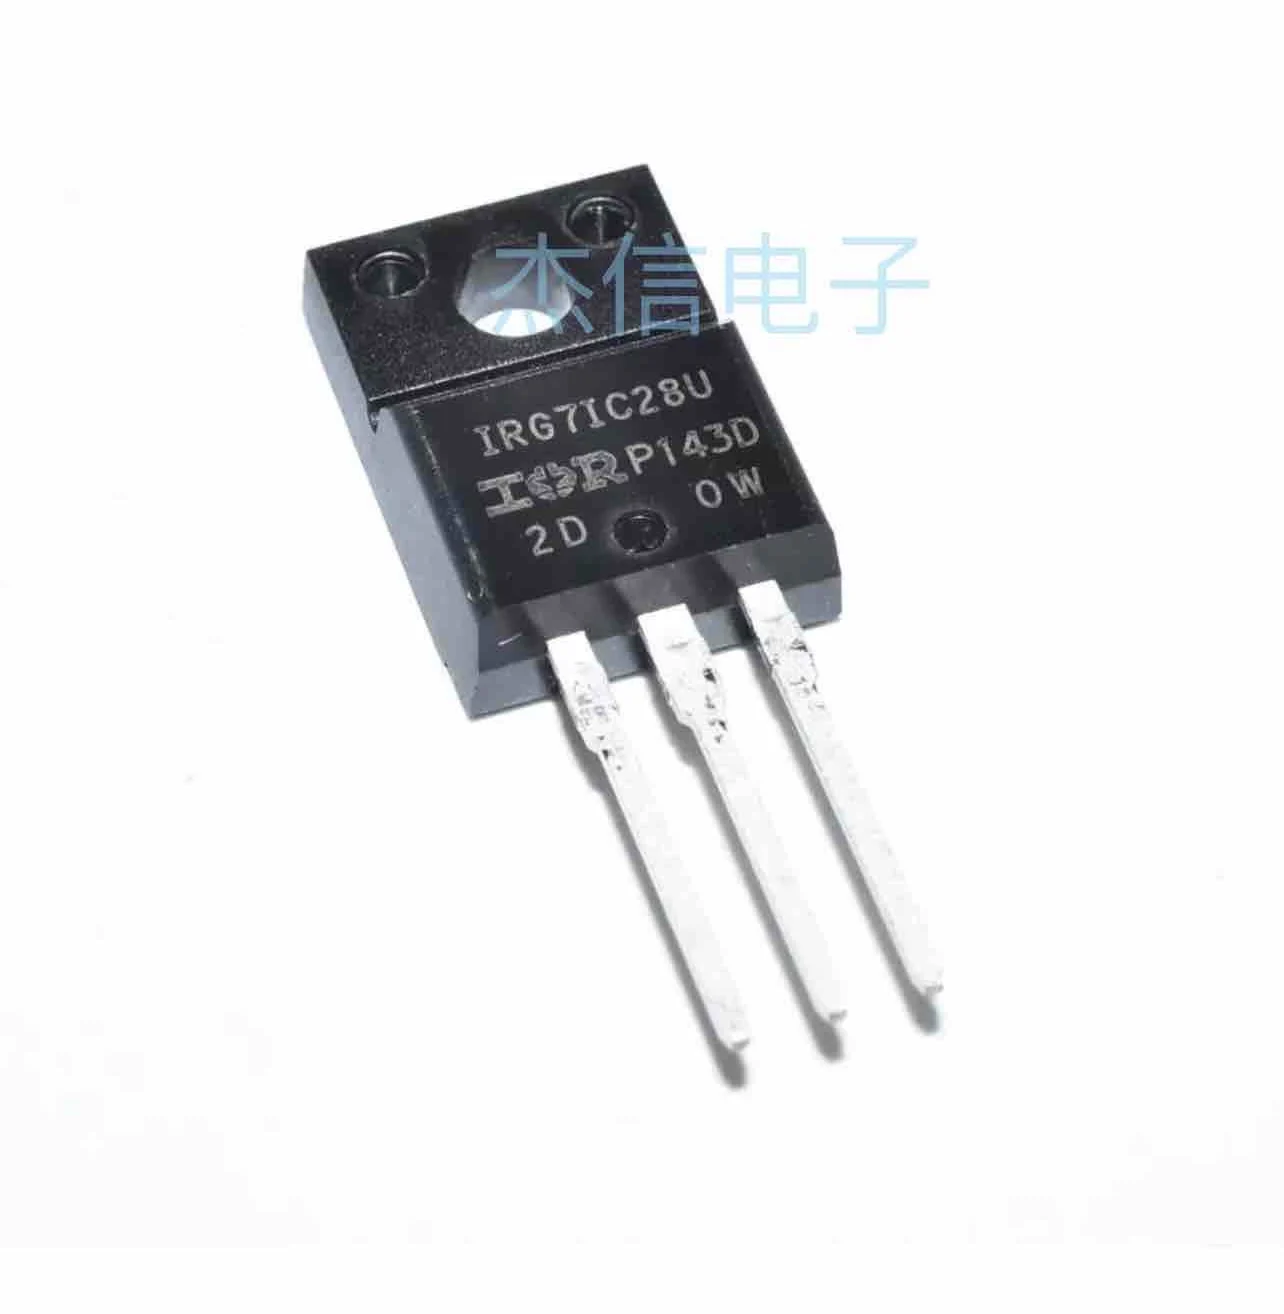 Автомобильный транзистор 10шт IRG7IC28U IRG71C28U TO220 FET 25A 600V